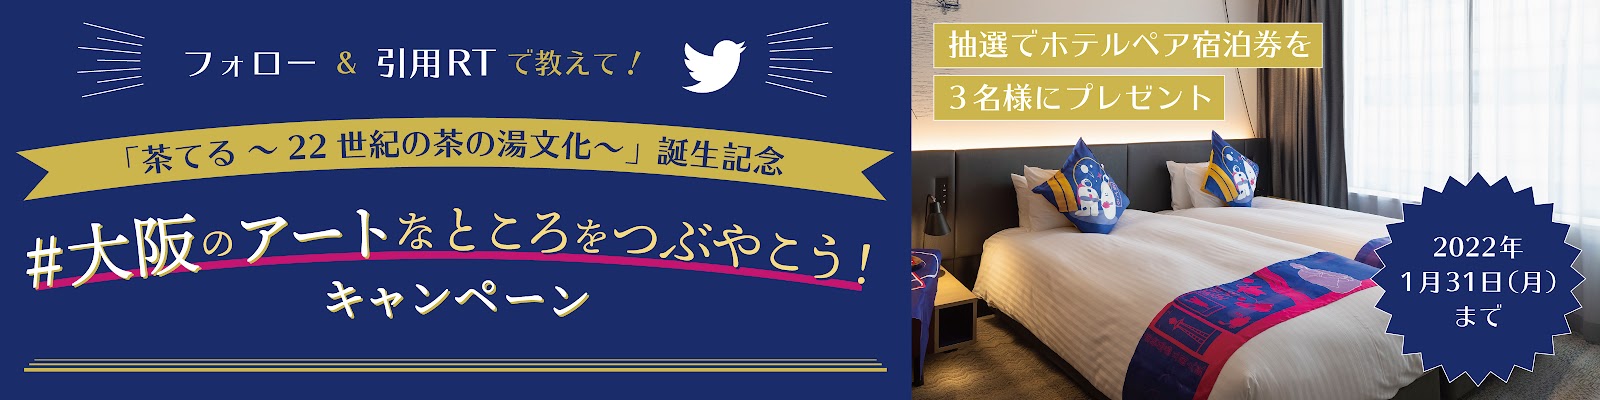 #大阪のアートなところをつぶやこう！Twitterキャンペーン画像